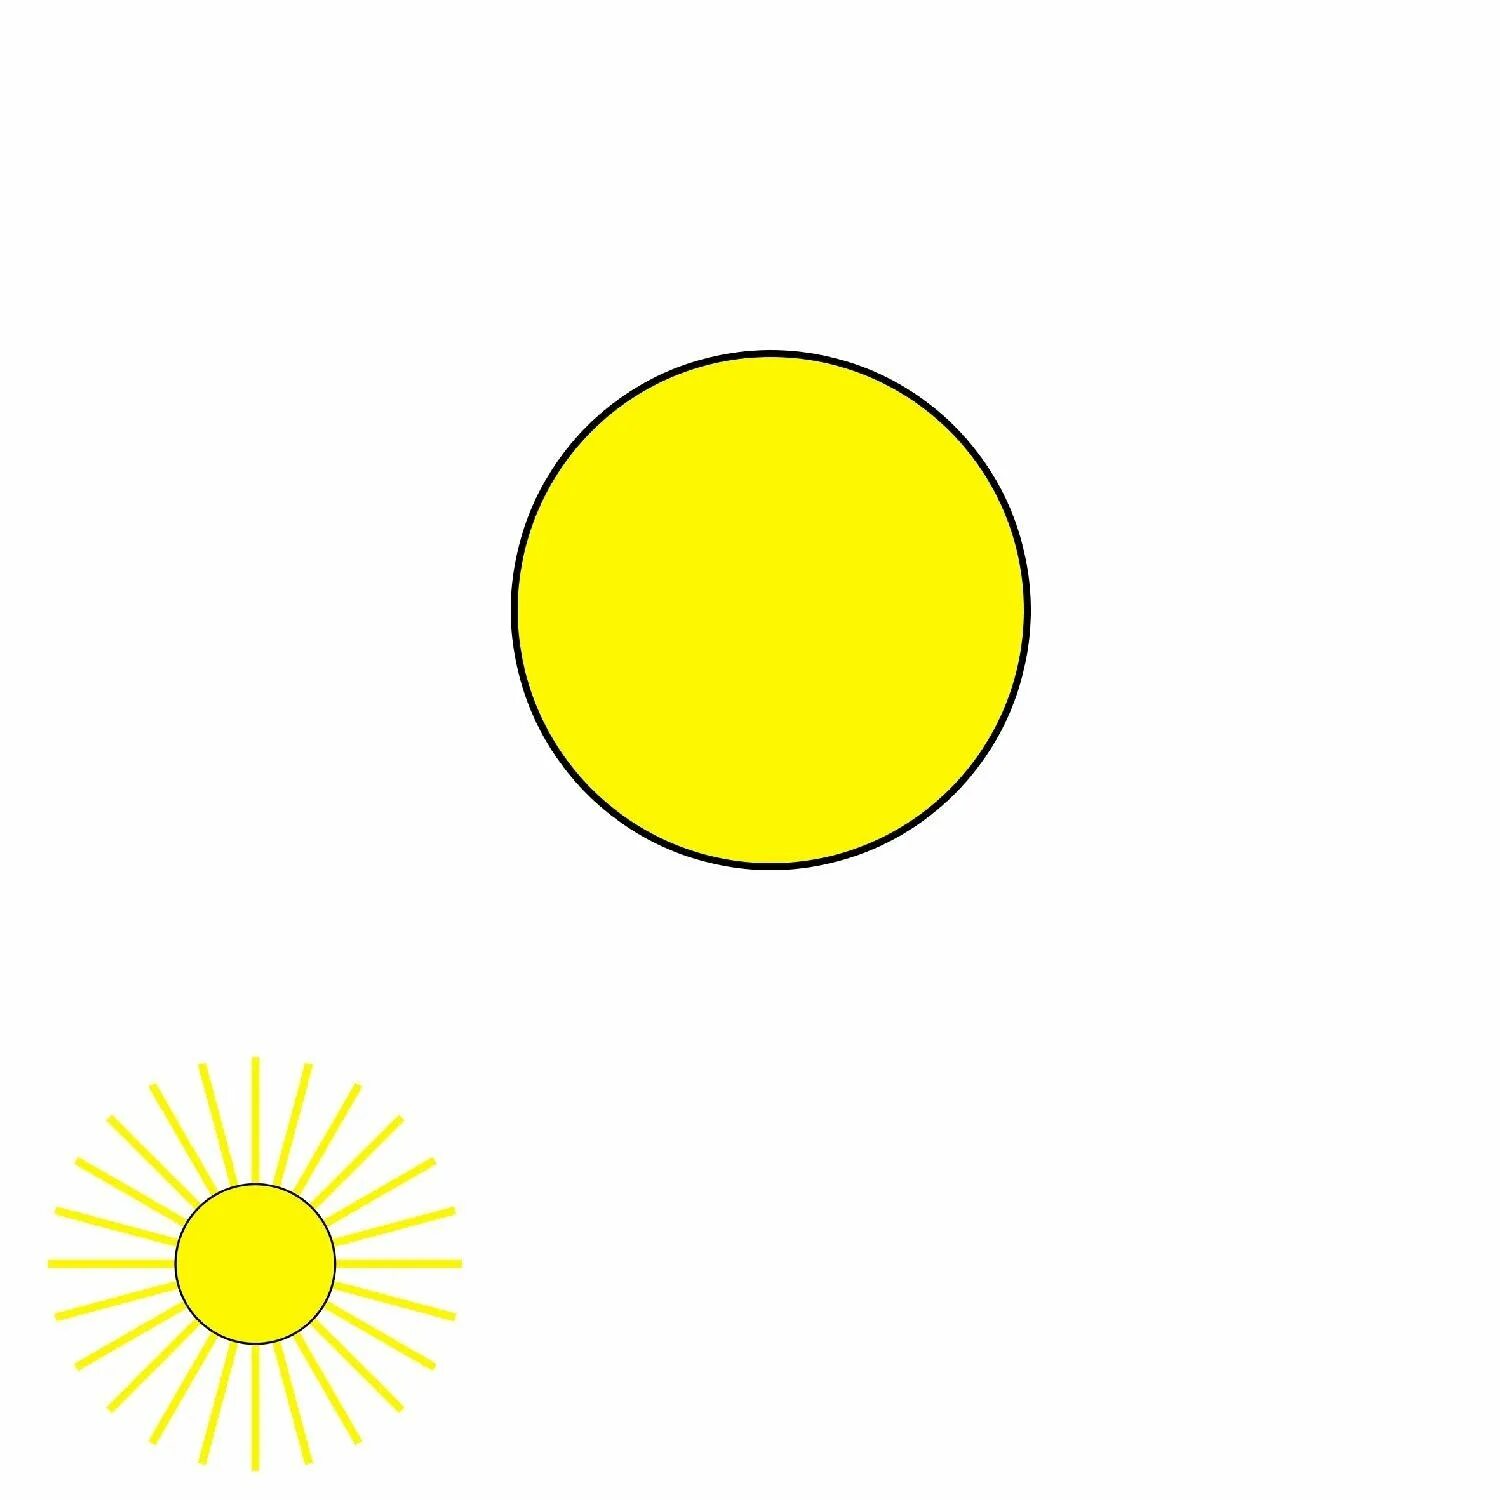 Картинка солнышко без лучиков для детей. Солнышко без лучиков для детей. Желтый круг. Круг желтого цвета. Кружочки желтого цвета.